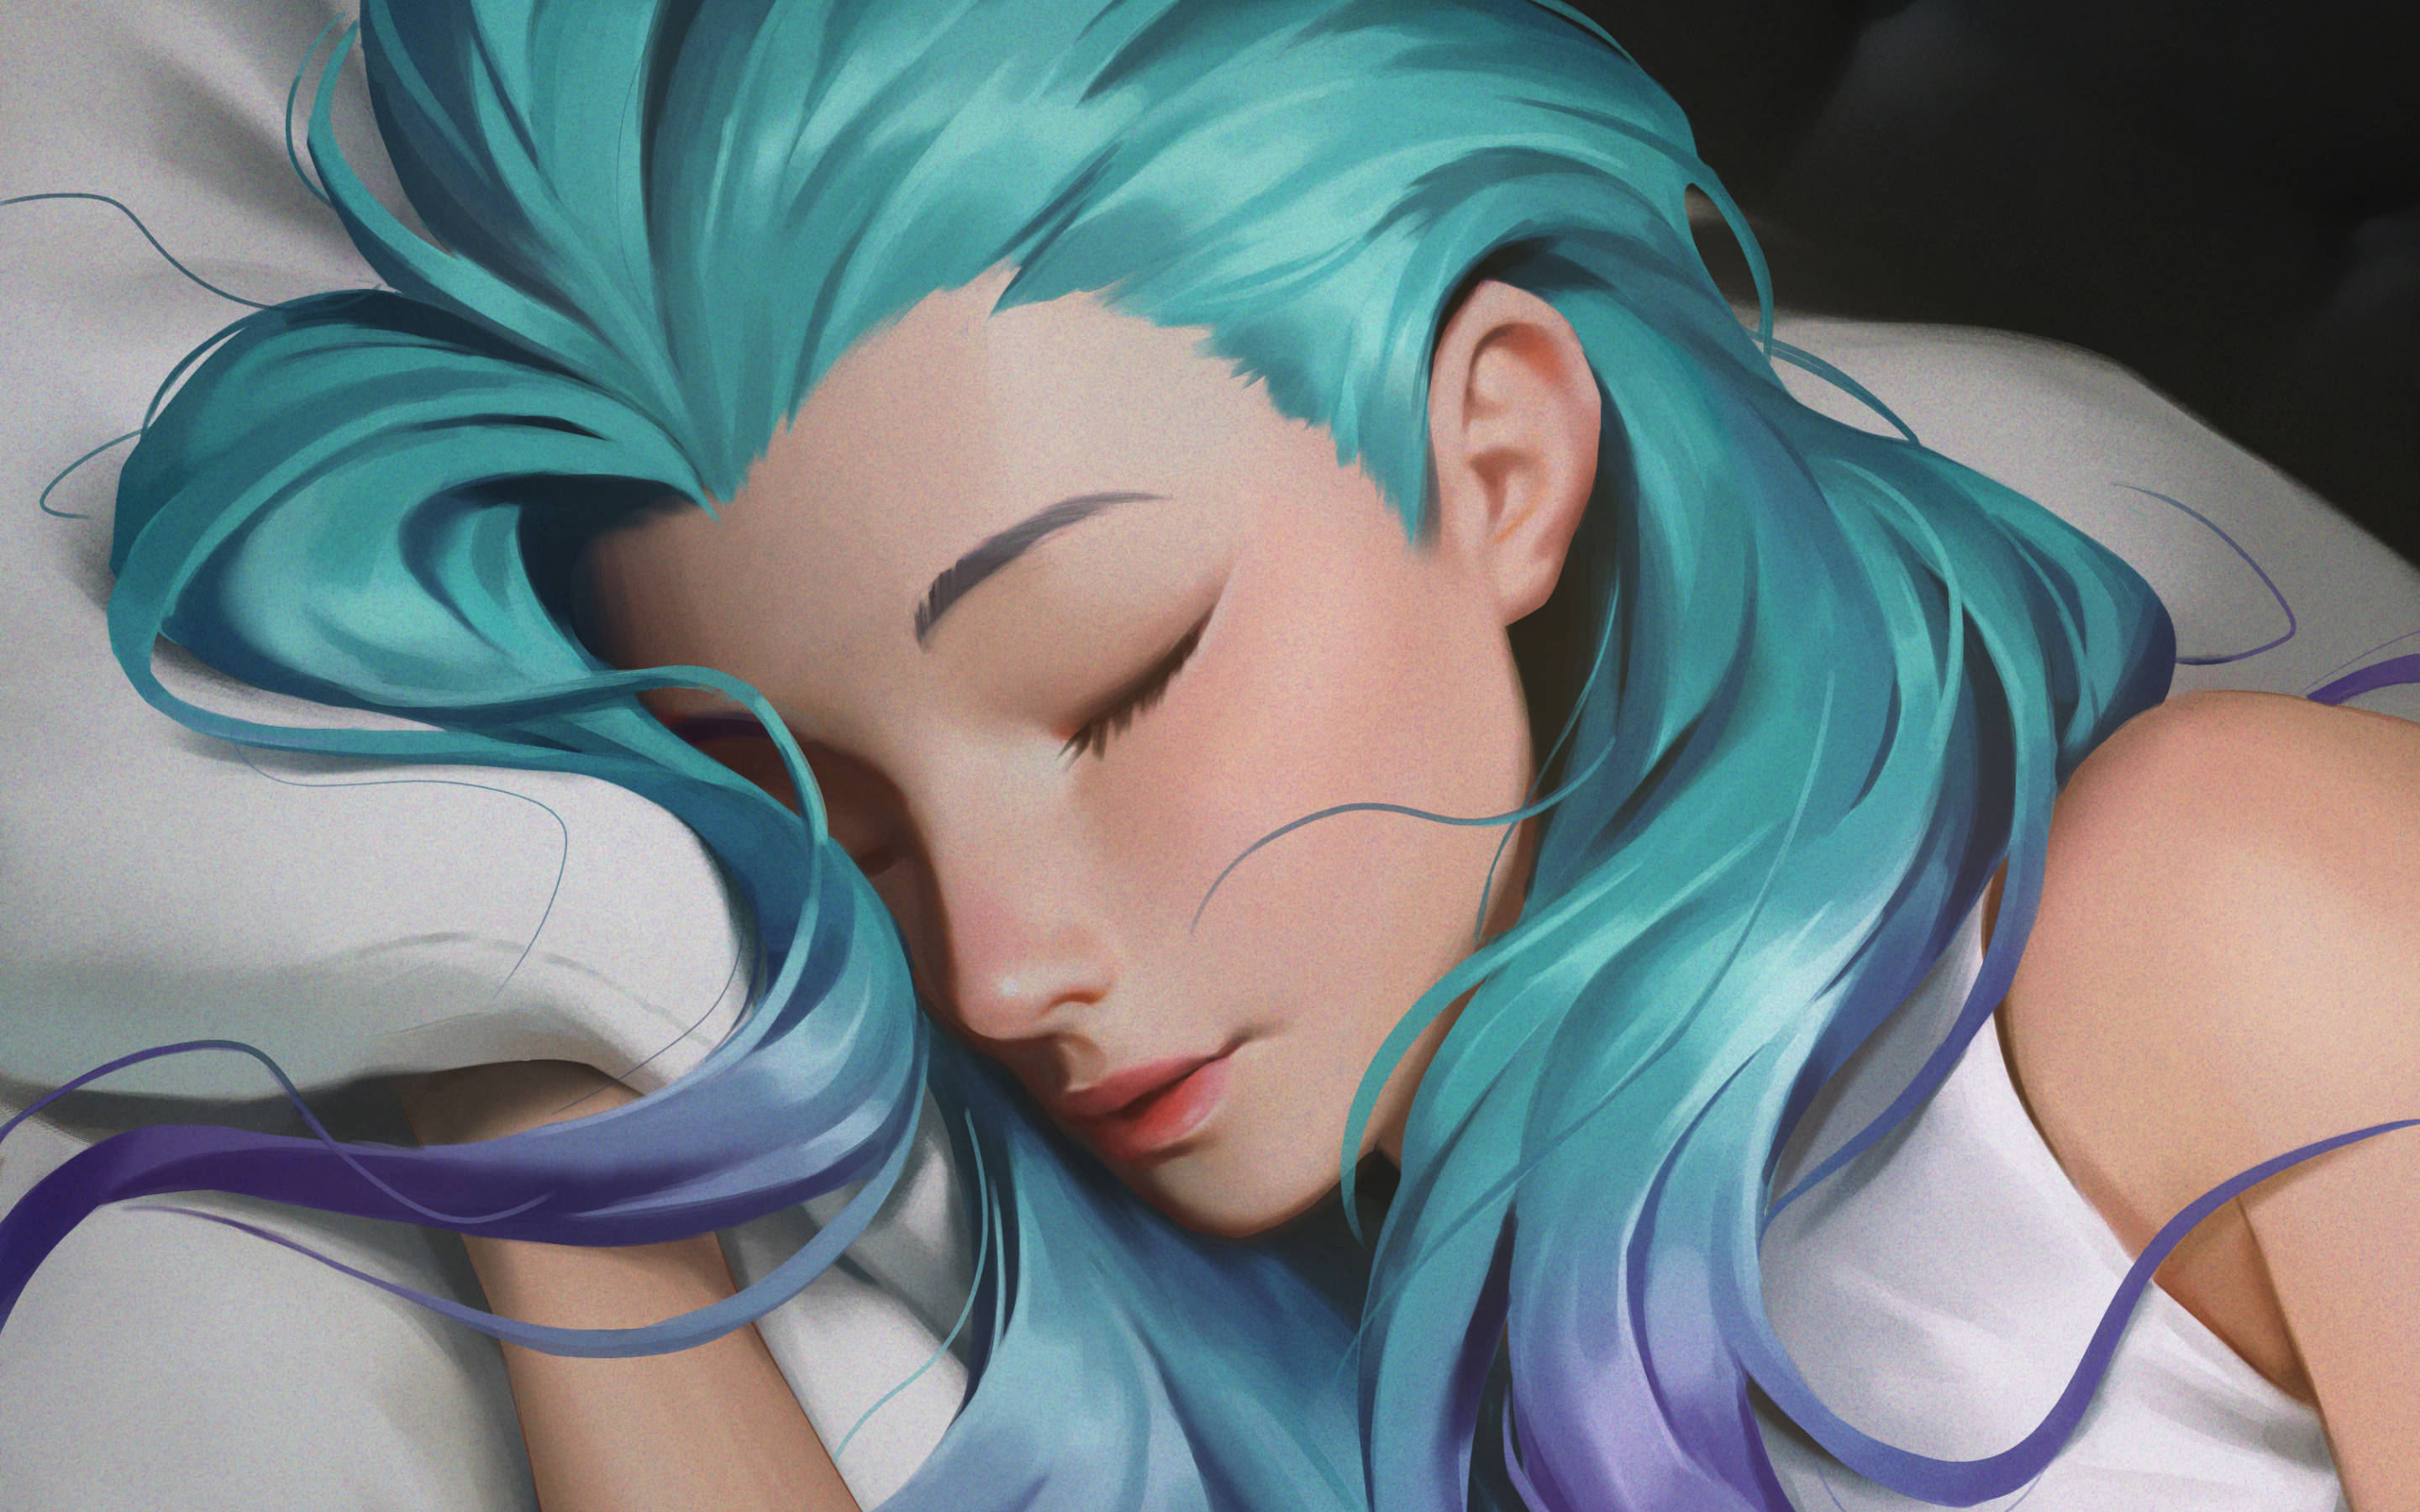 Blue hair girl, sleeping, original, art, 2880x1800 wallpaper